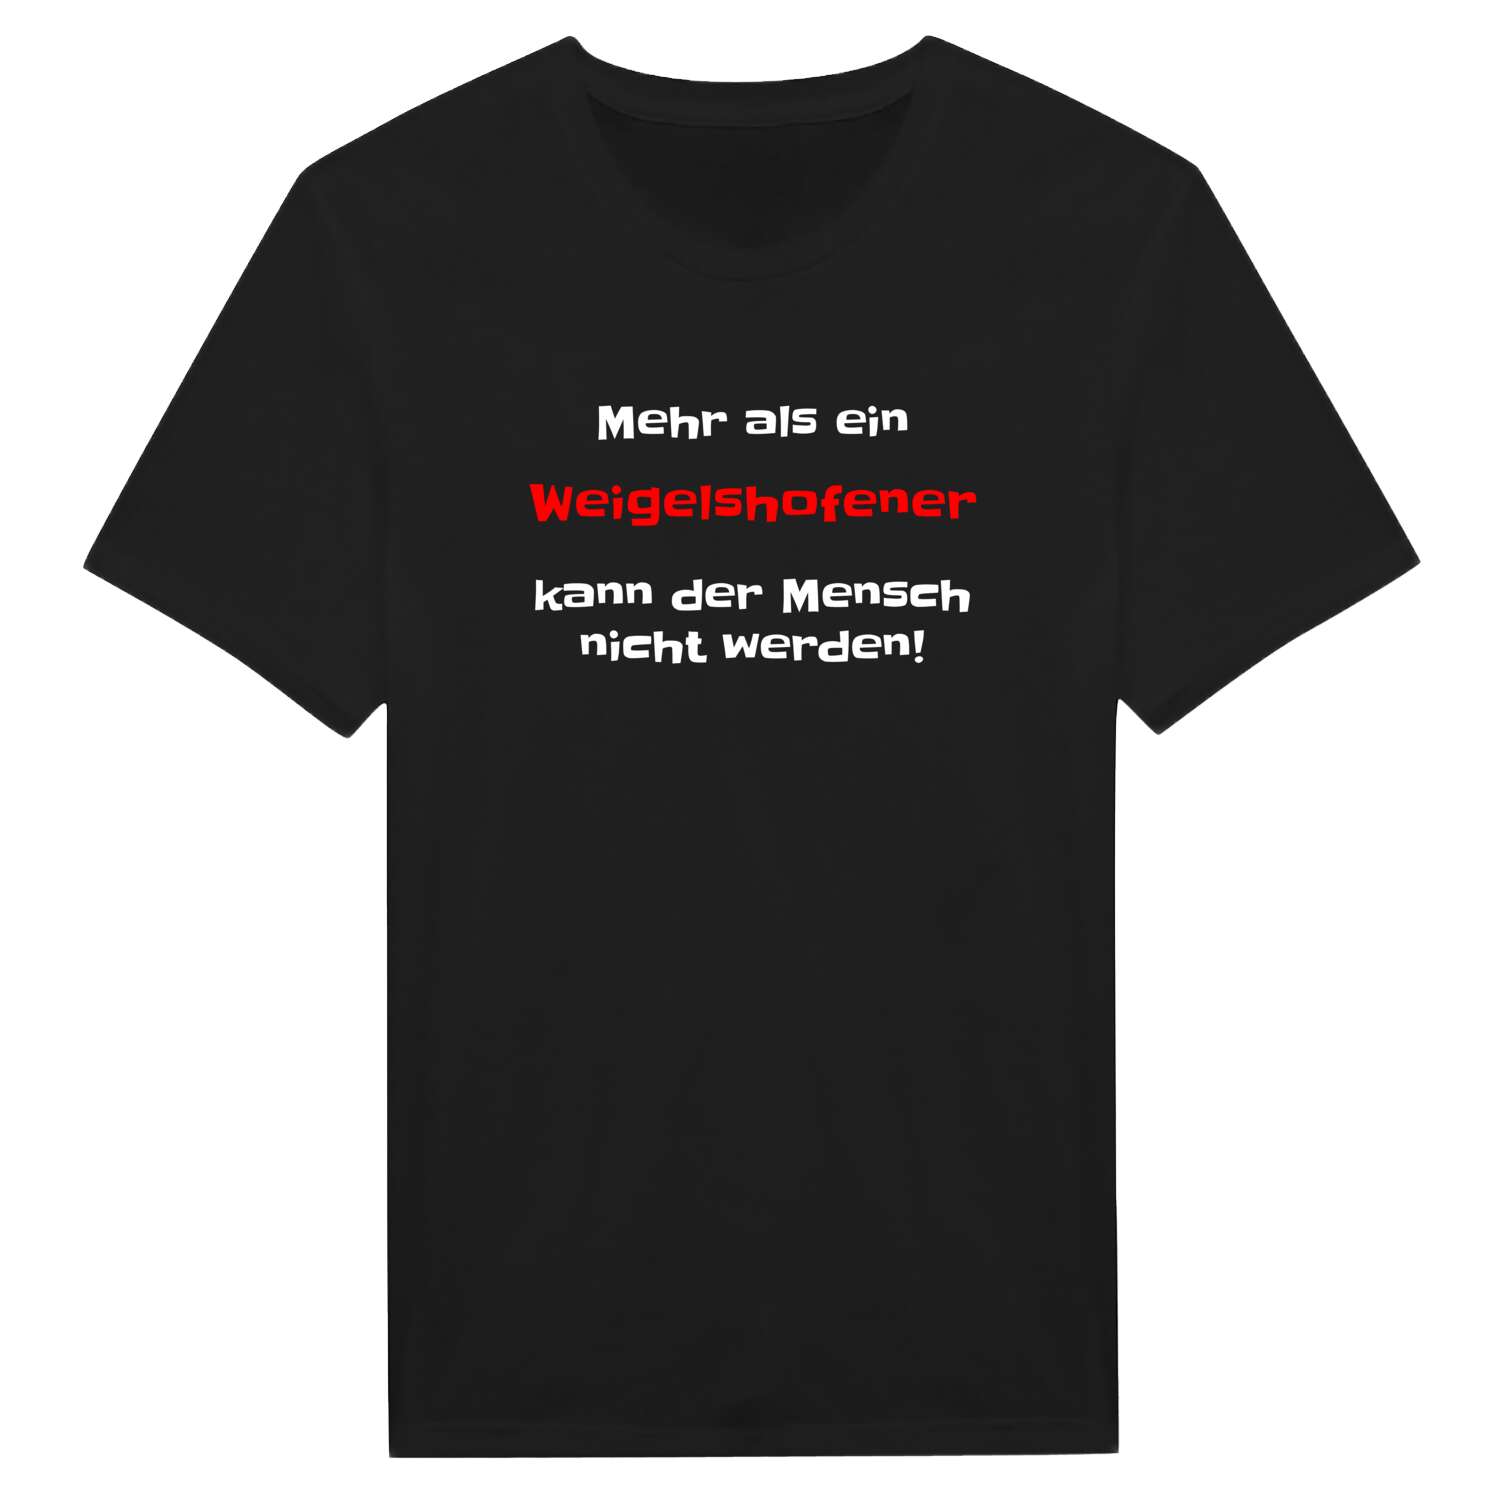 Weigelshofen T-Shirt »Mehr als ein«